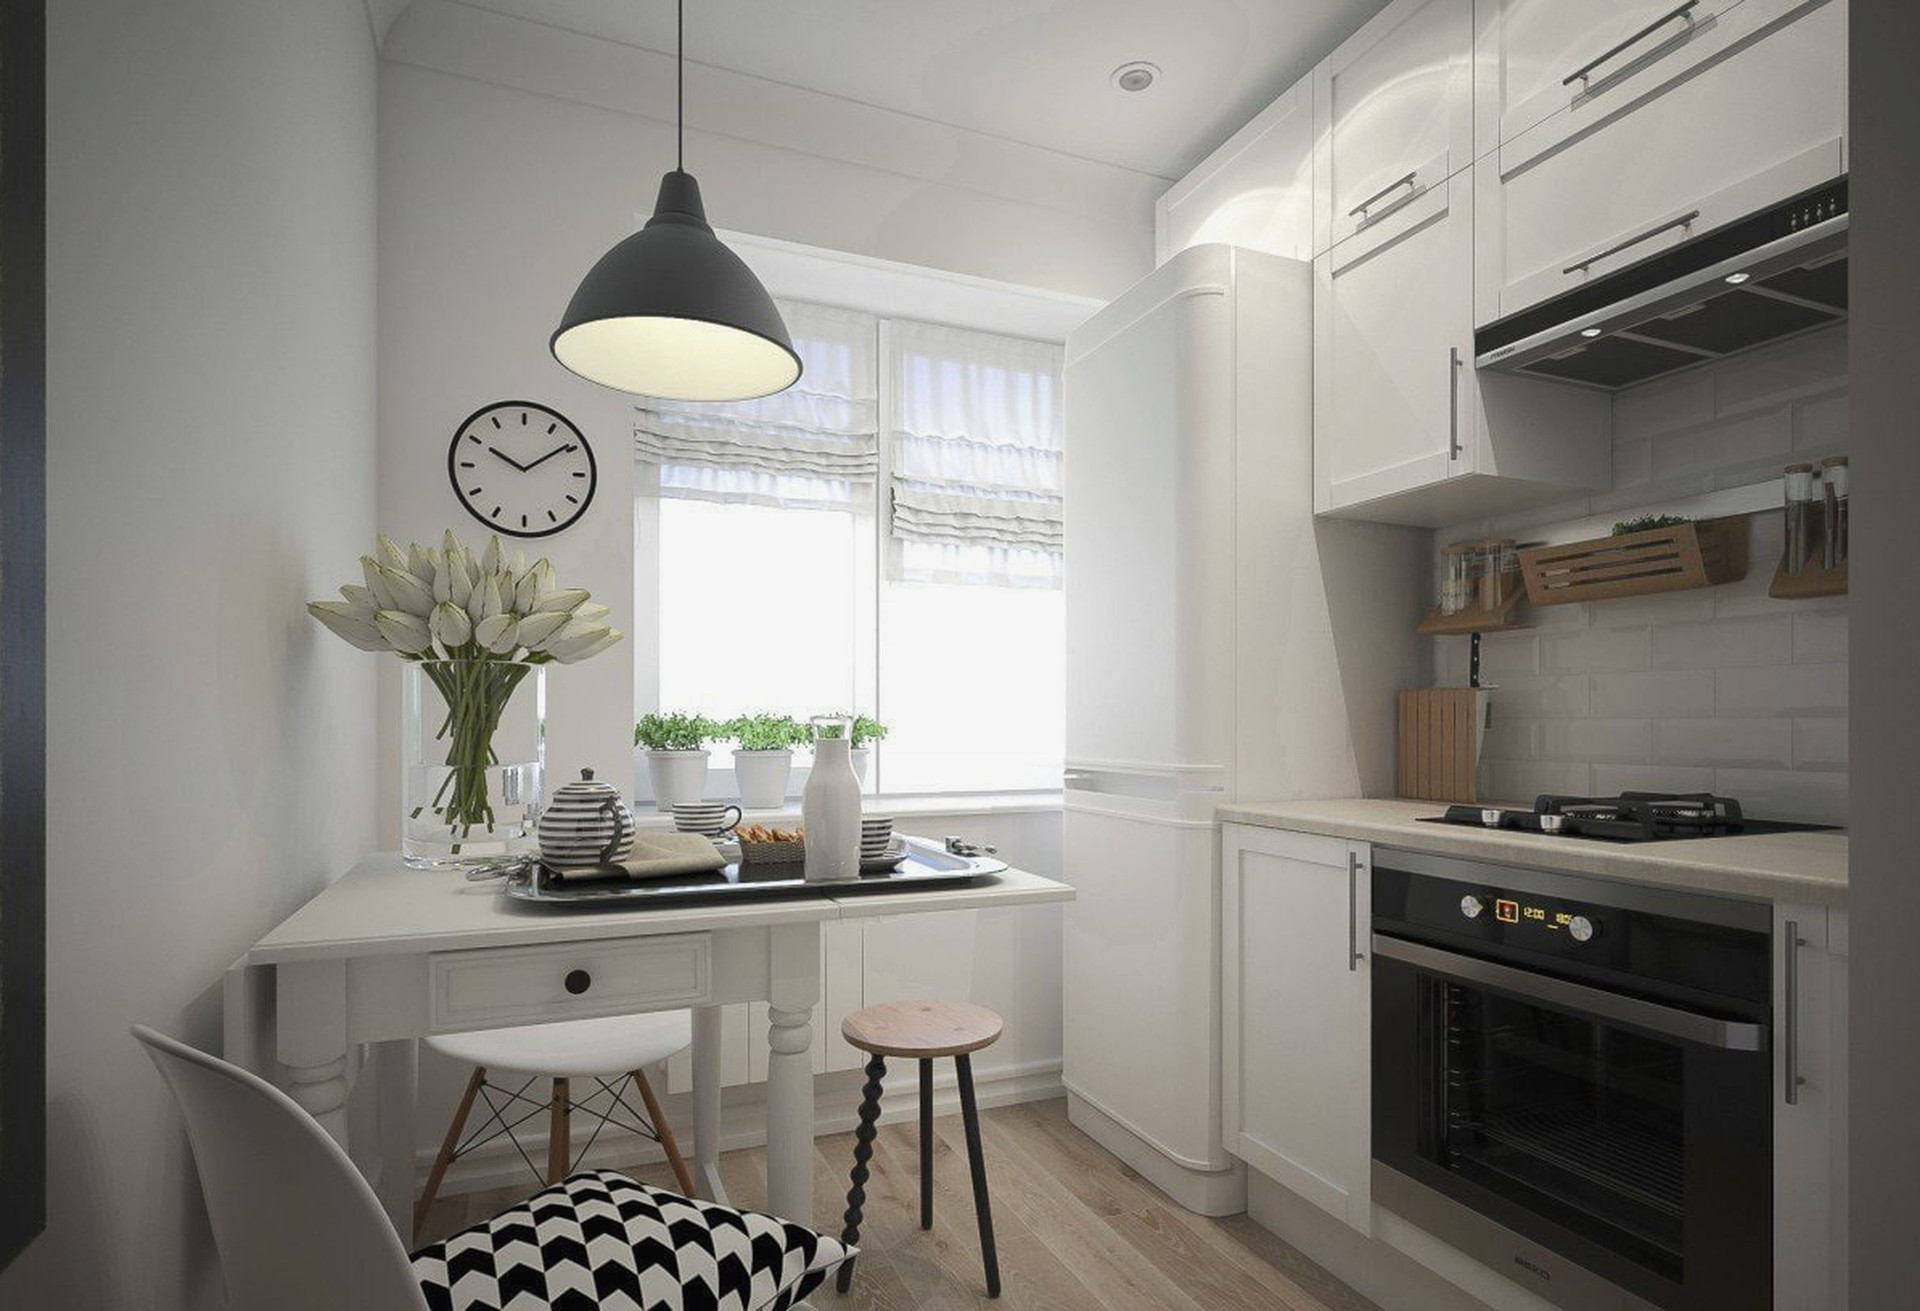 Кухни дизайн м: Дизайн кухни 12 кв.м. (60 фото): идеи для ремонта, интерьеры